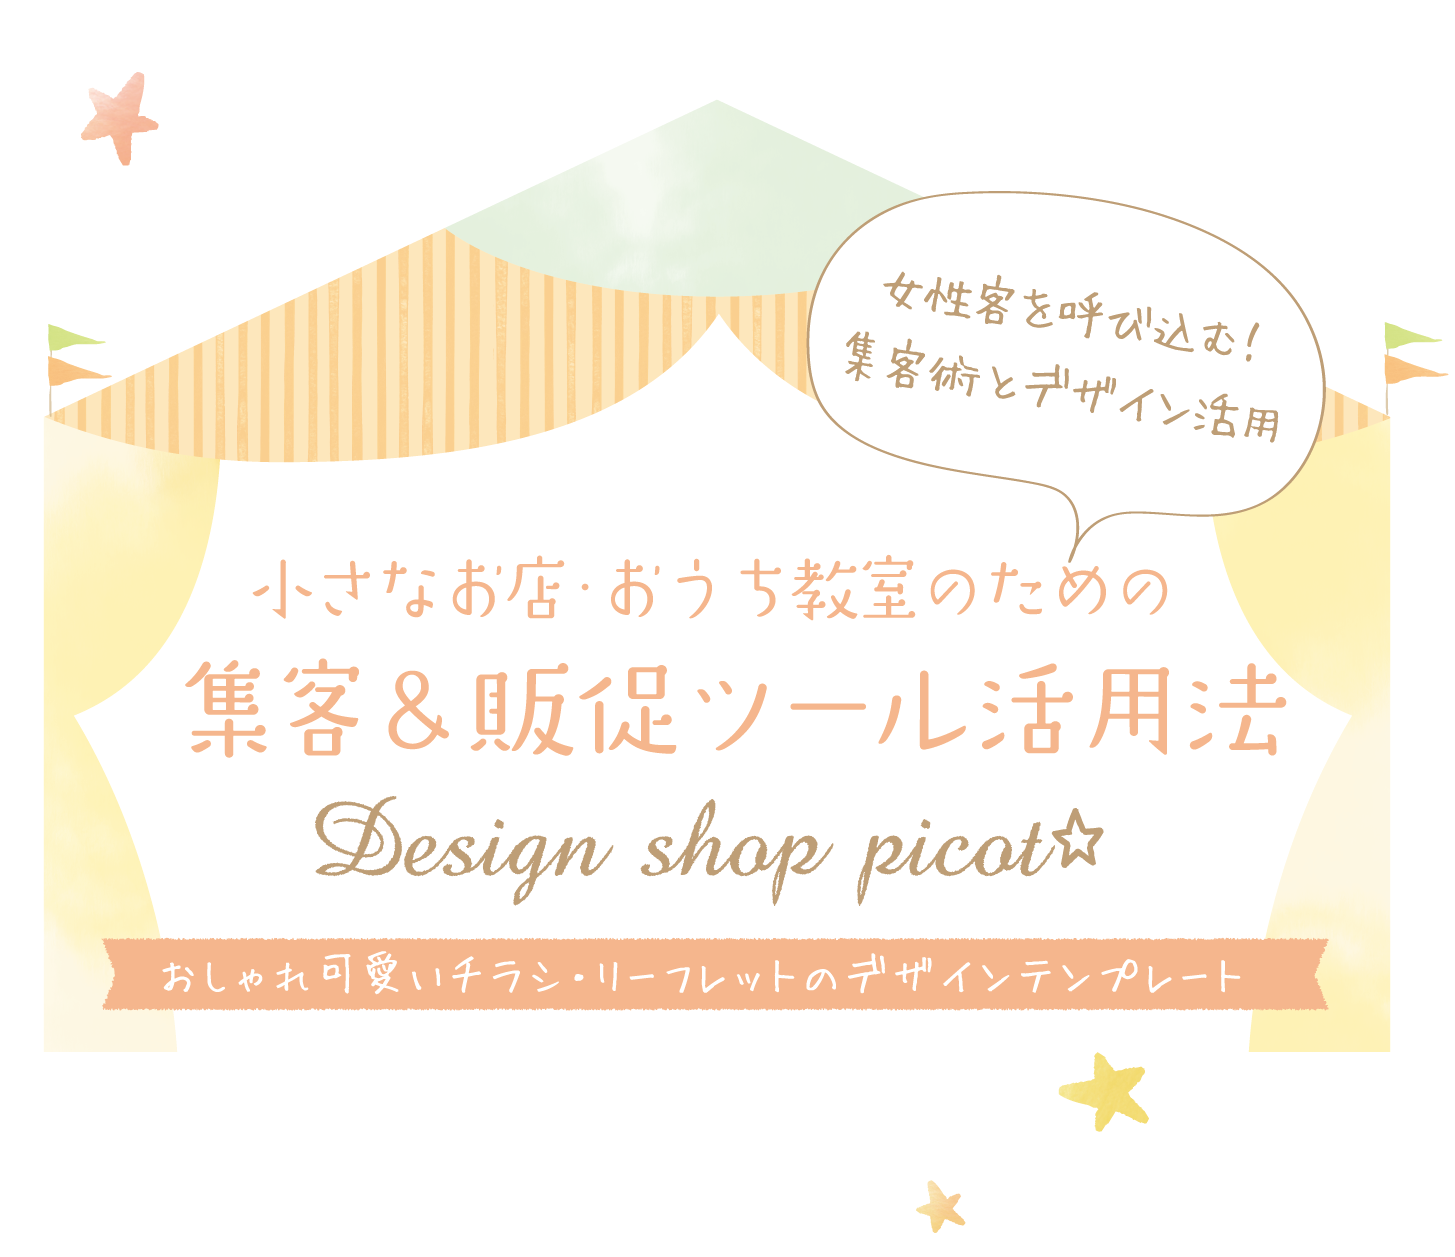 Design Shop Picot 小さなお店 おうち教室のための集客 販促ツール活用法